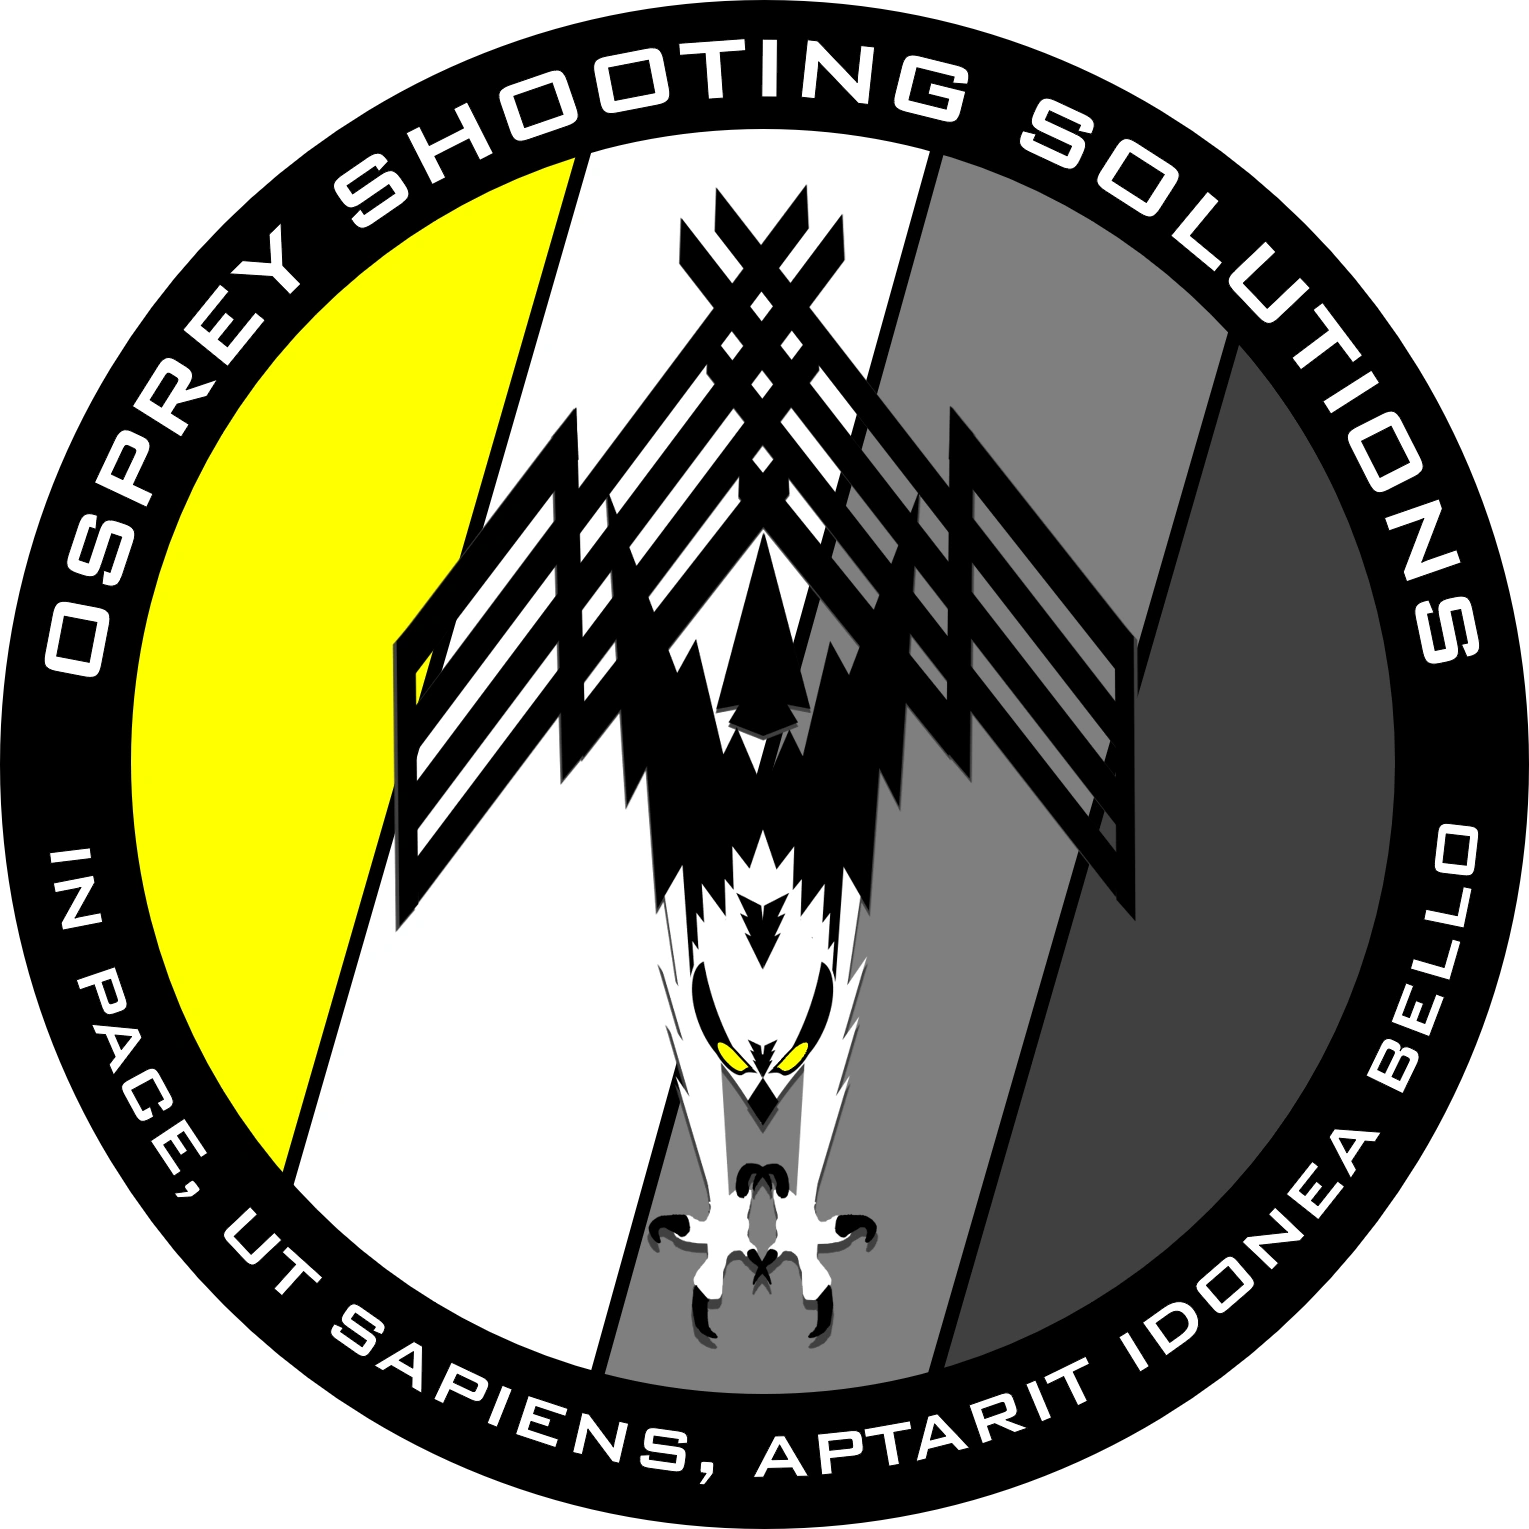 ospreyshootingsolutions.com